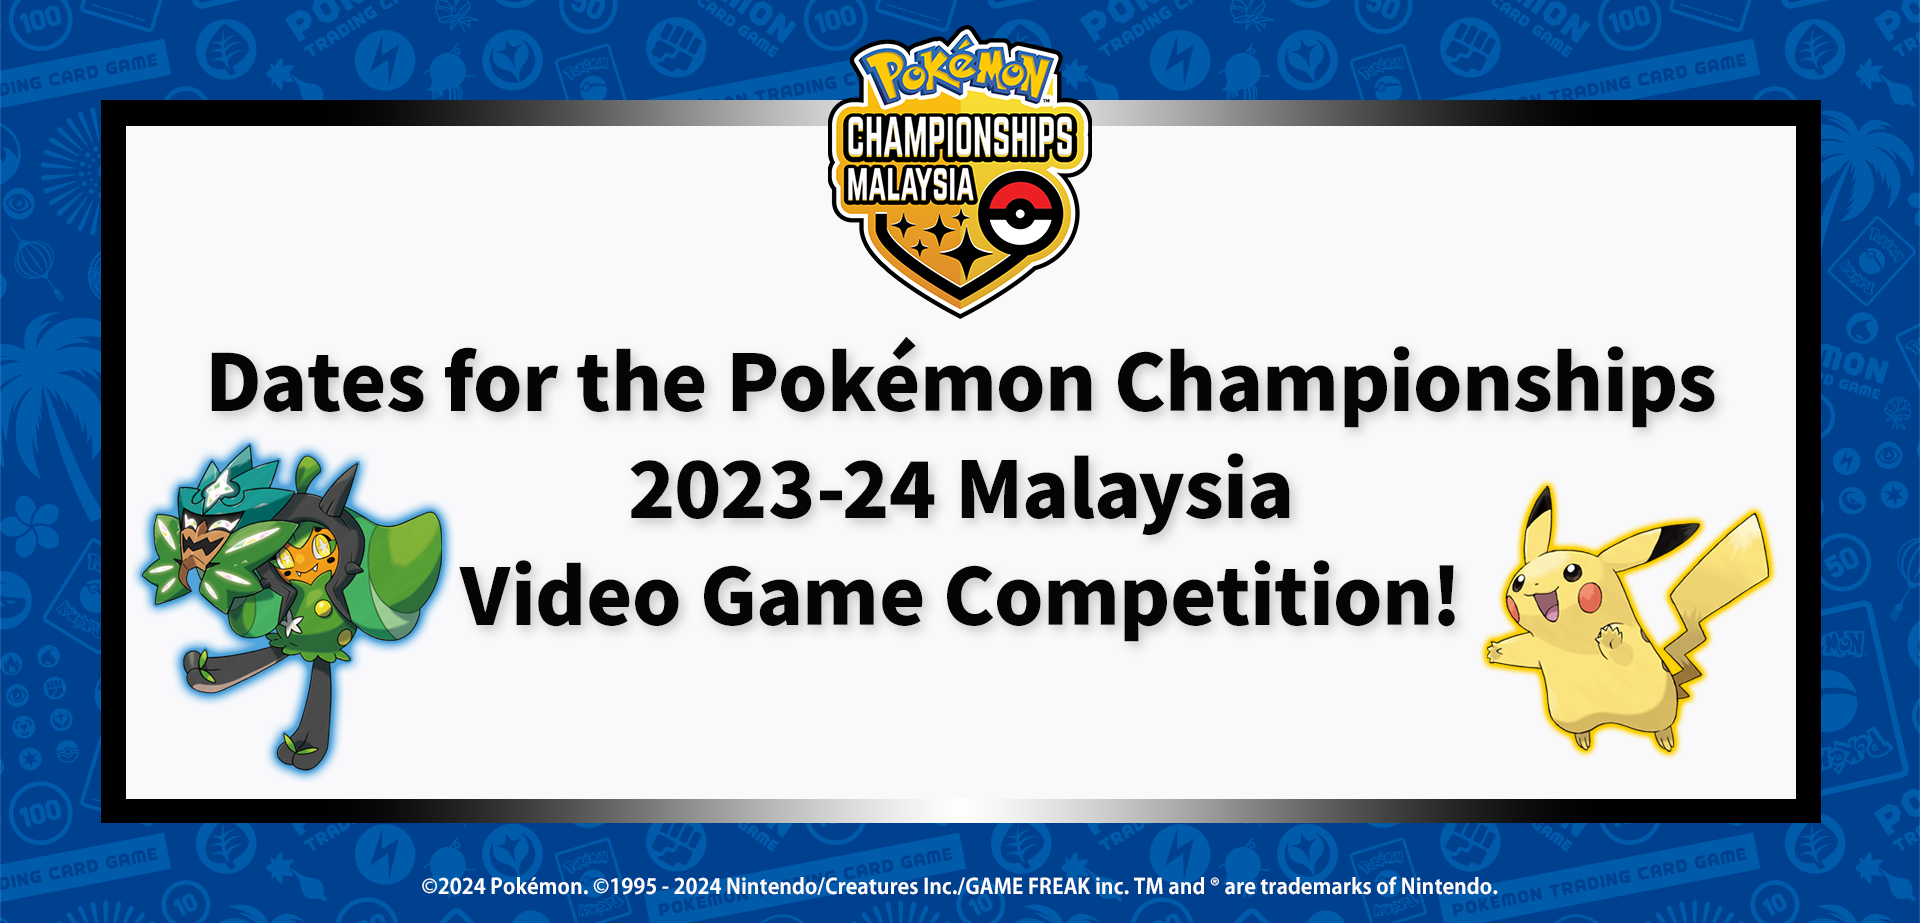 Pokemon_2023-24ChampionsShipVG_MY_info_0321